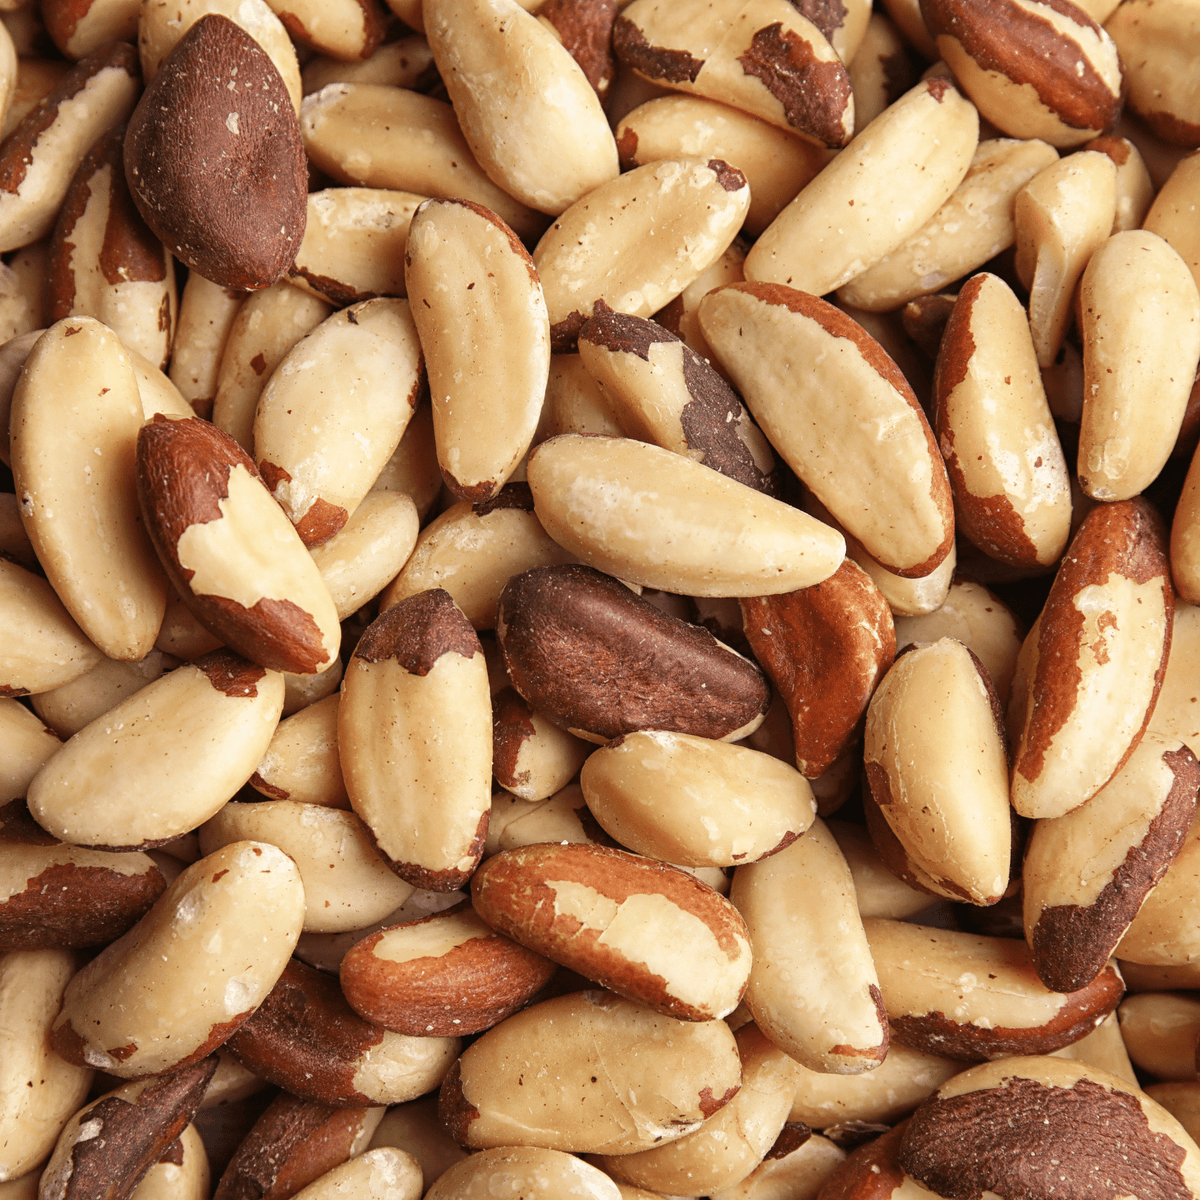 Castanha do Pará a granel - Natural Nuts